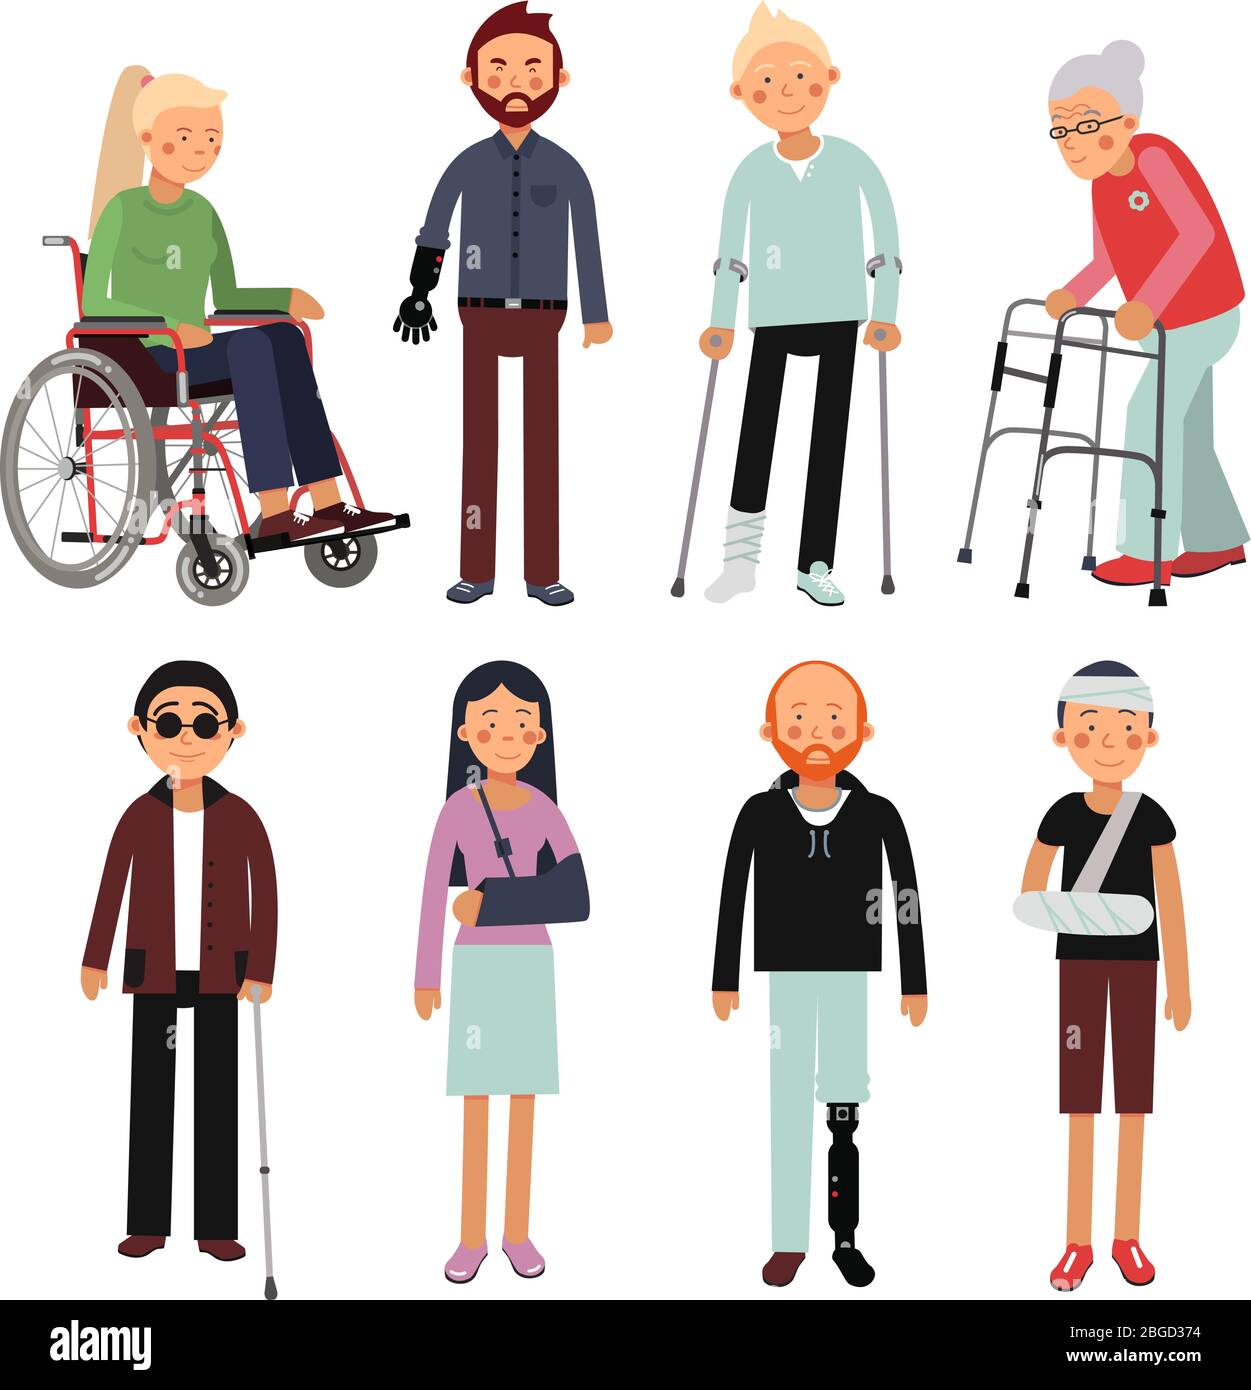 Illustration de style plat de personnes handicapées dans différentes poses. Images vectorielles des patients de l'hôpital isolés Illustration de Vecteur